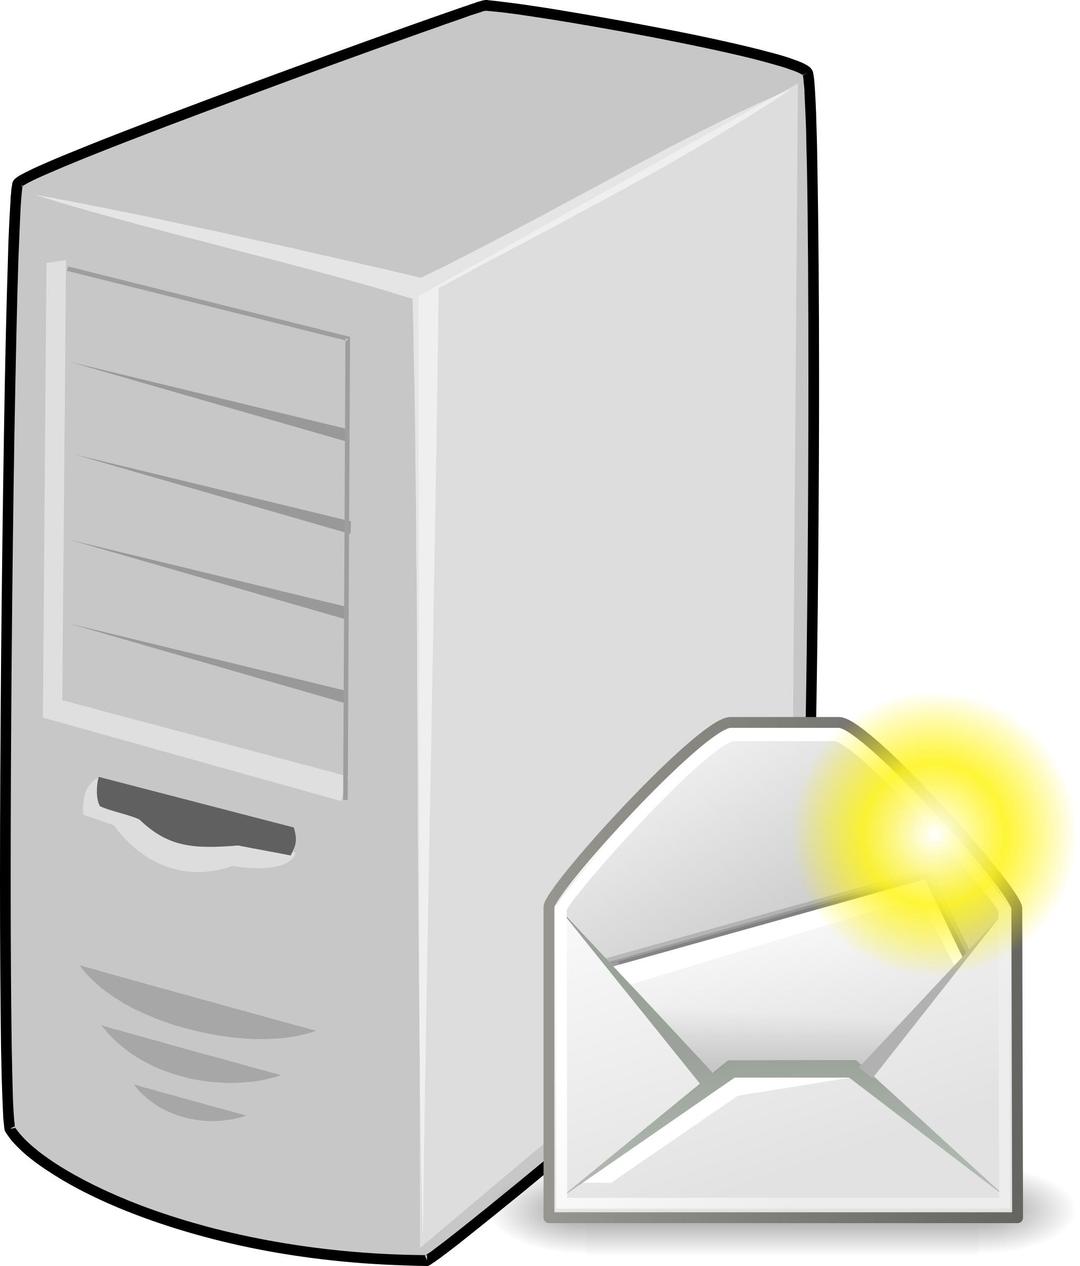 E-Mail Server png transparent